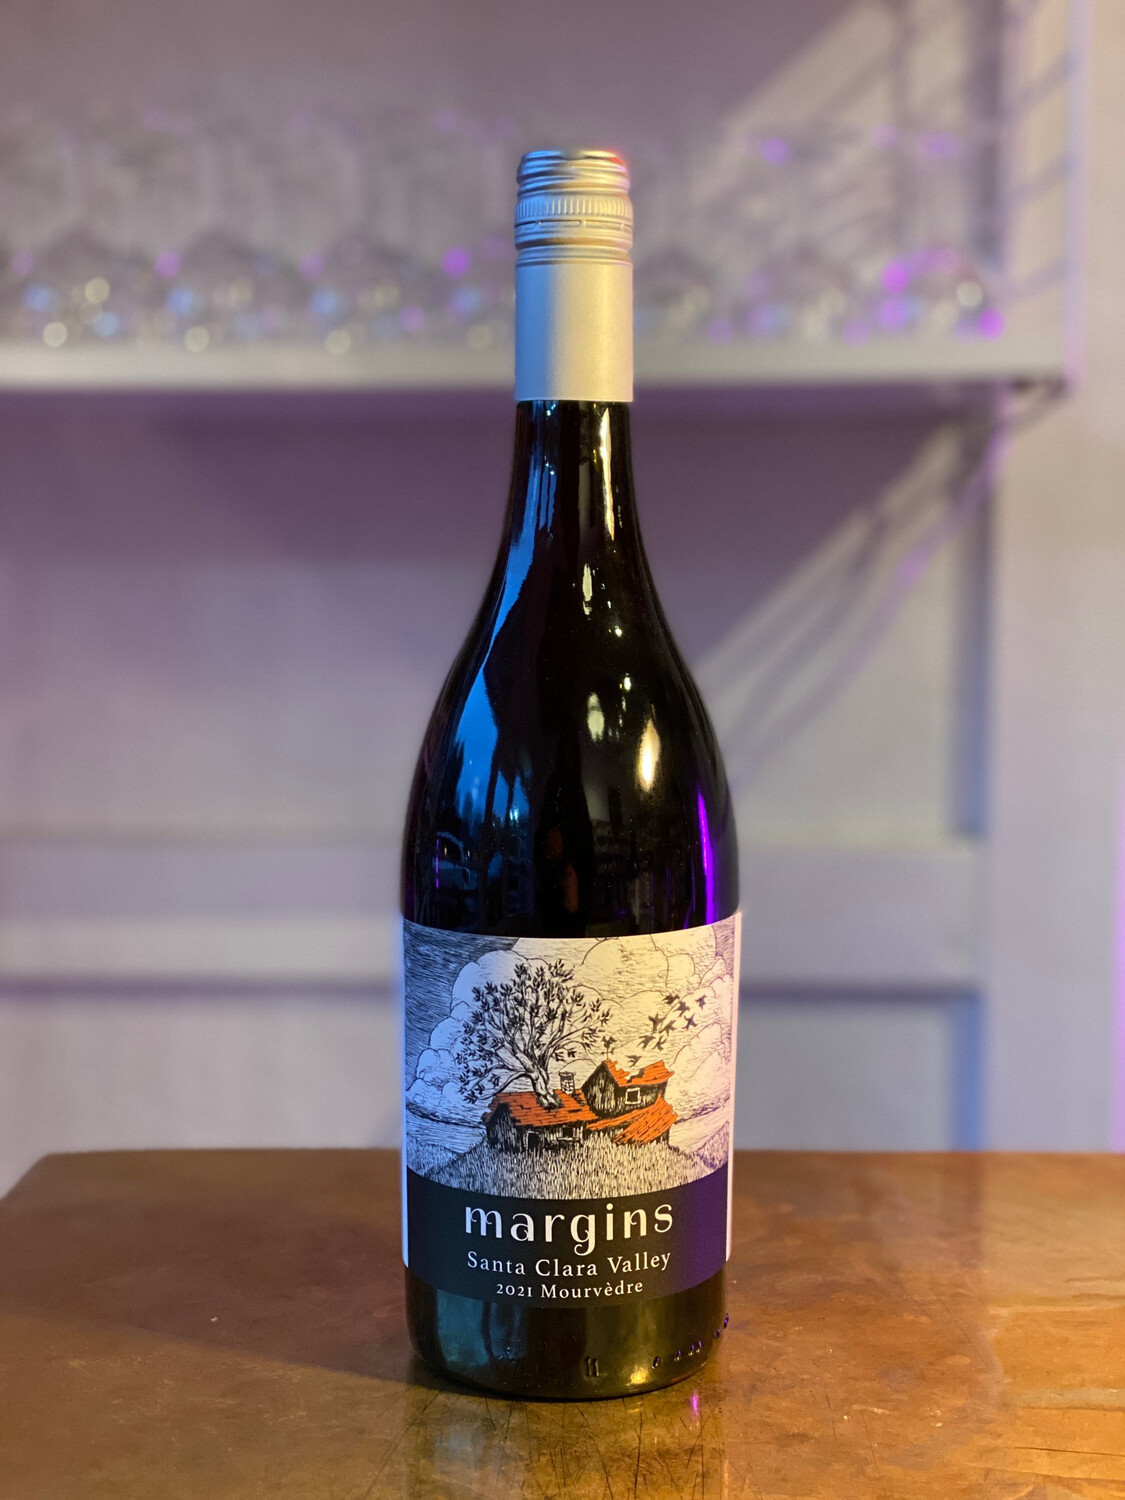 Margins Wine, Mourvedre Santa Clara Valley (2021)